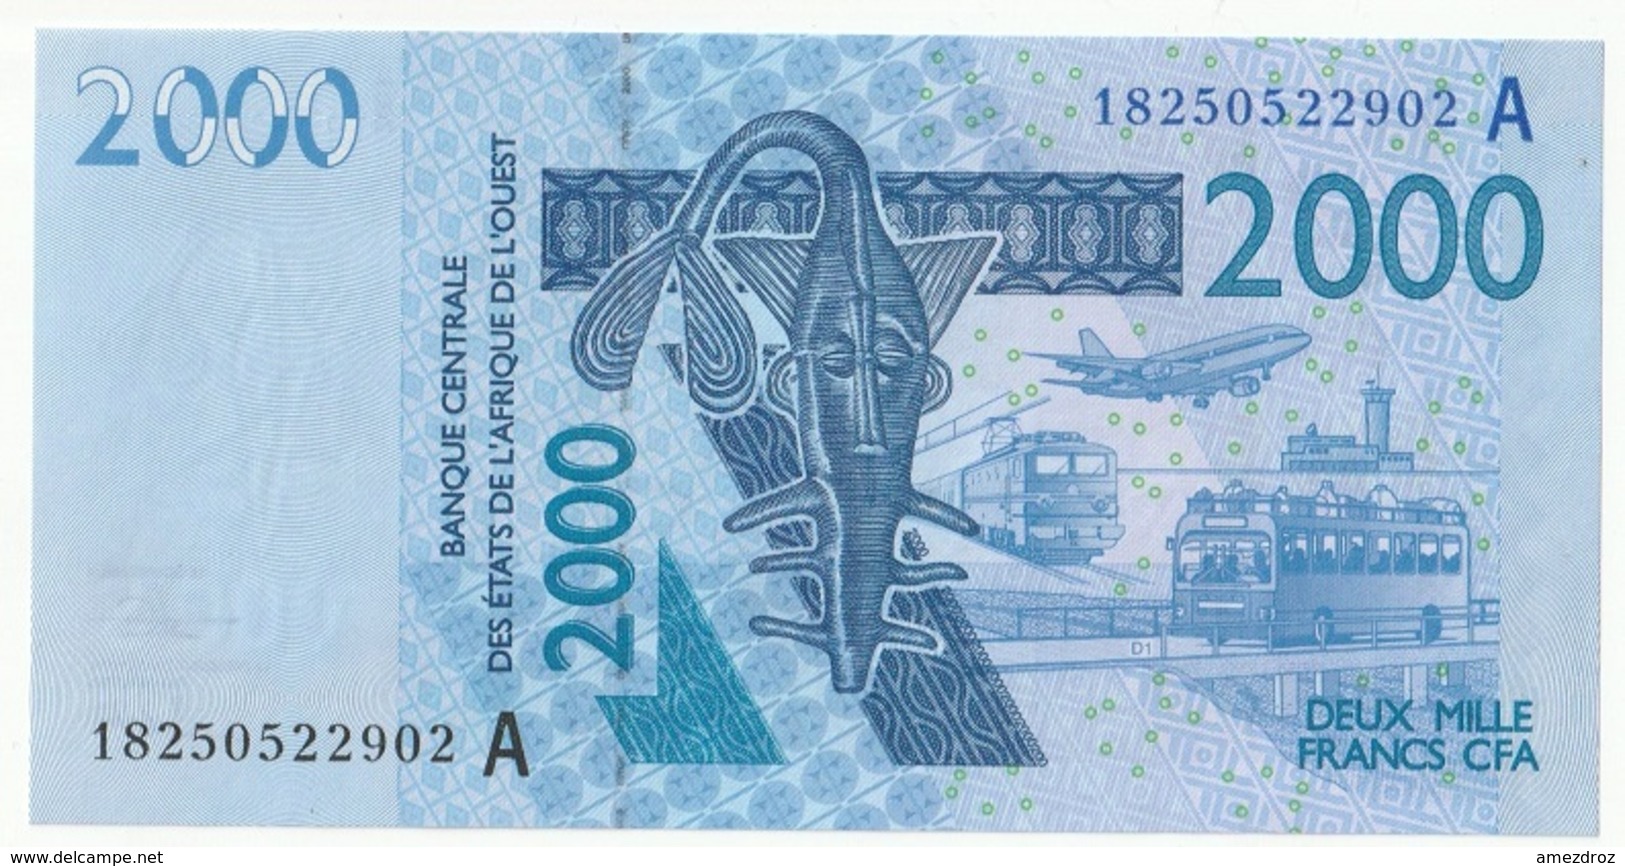 Billet De 2000 Francs CFA XOF Non Circulé Afrique De L'Ouest Origine Cote D'Ivoire - Elfenbeinküste (Côte D'Ivoire)